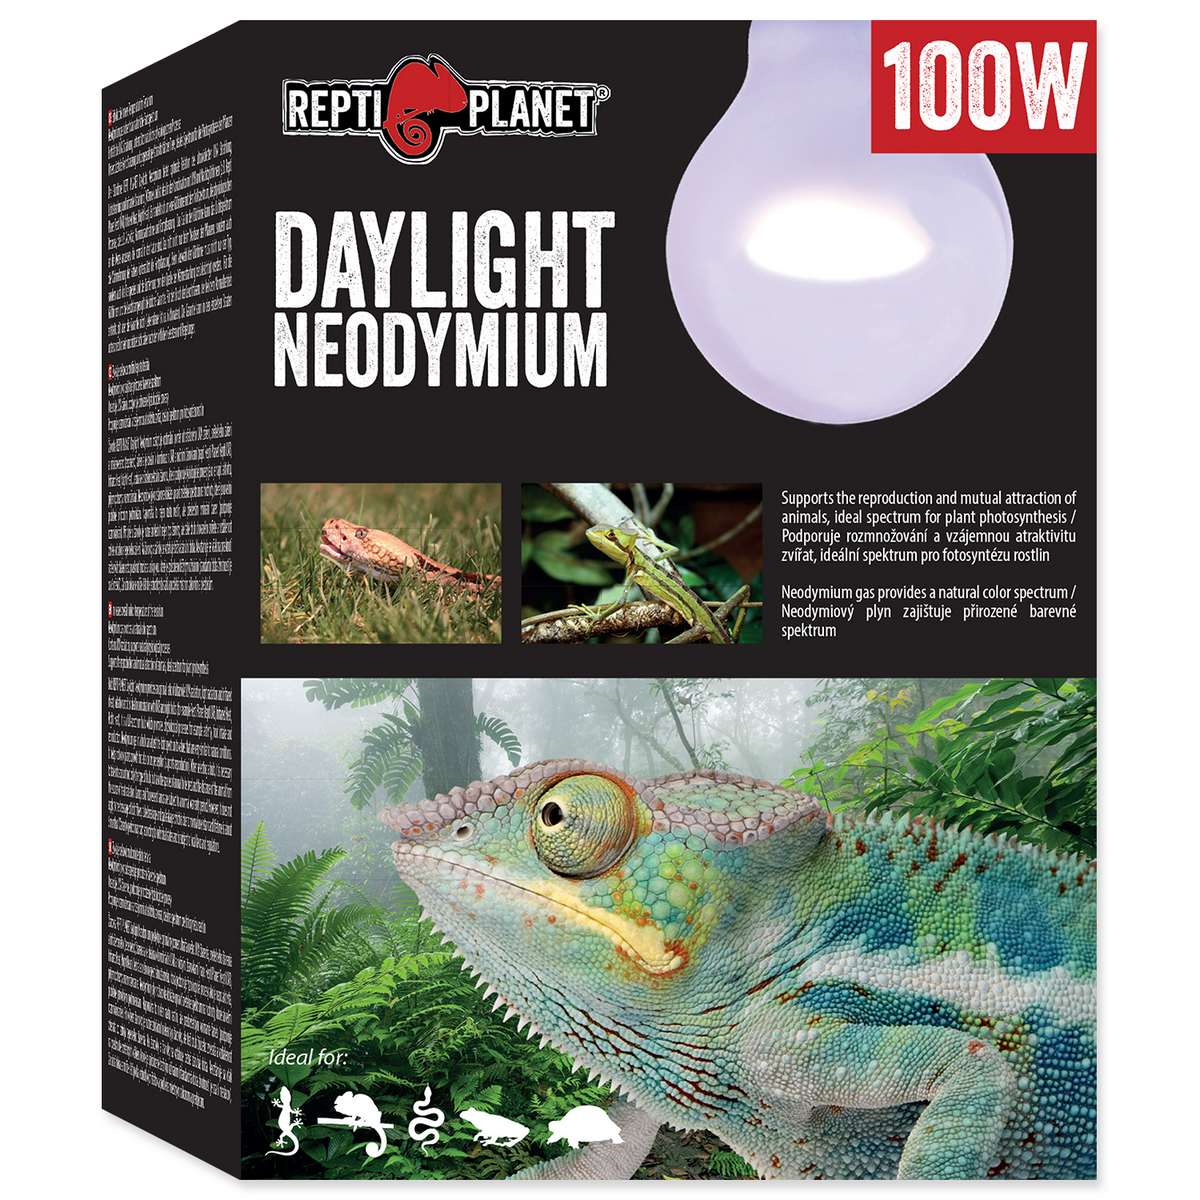 Repti Planet Daylight Neodymium 100 W 007-41014